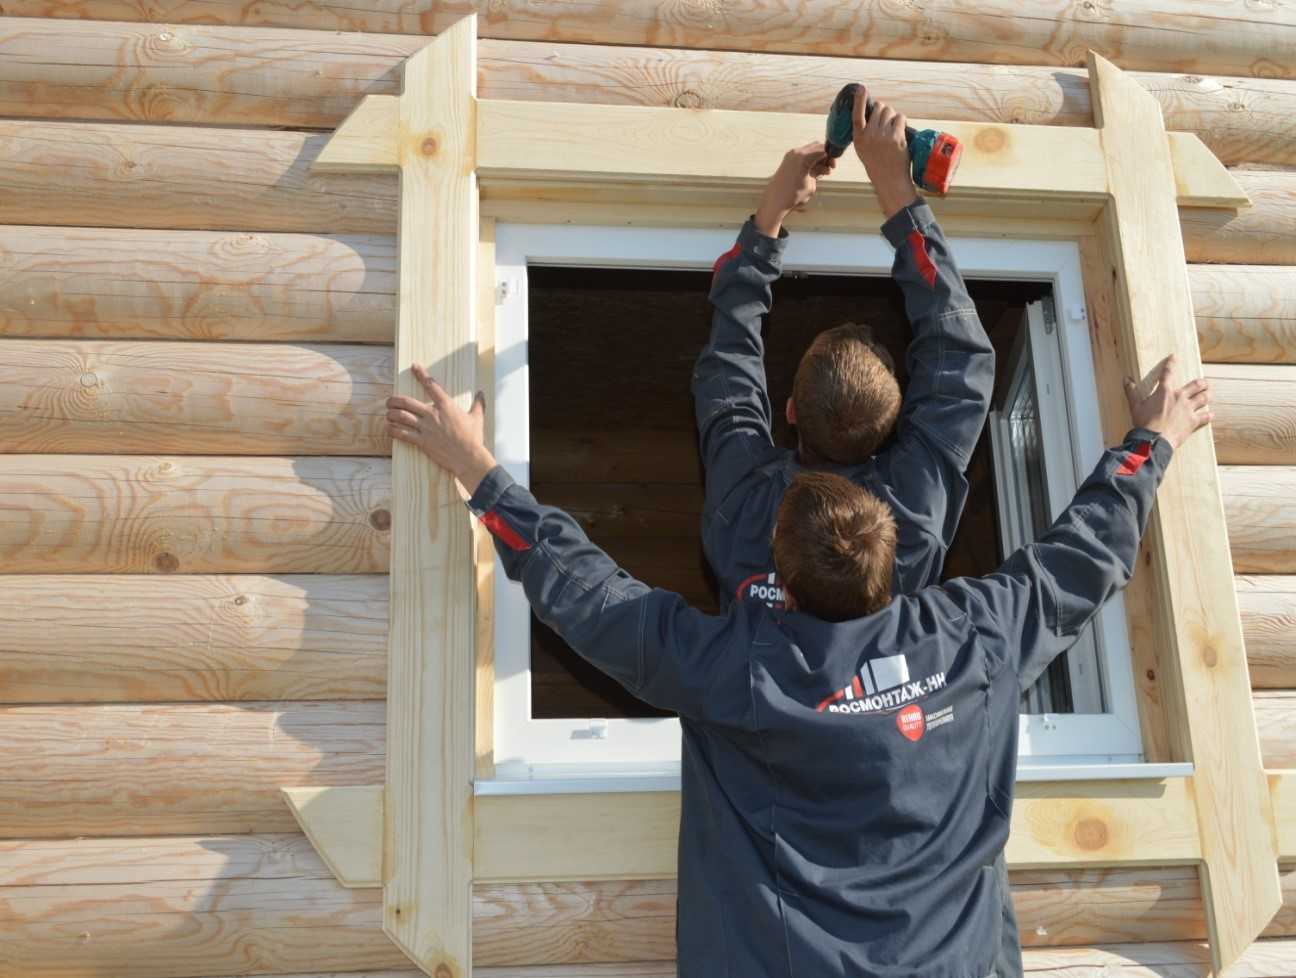 Как можно самостоятельно установить пластиковые окна в деревянном доме